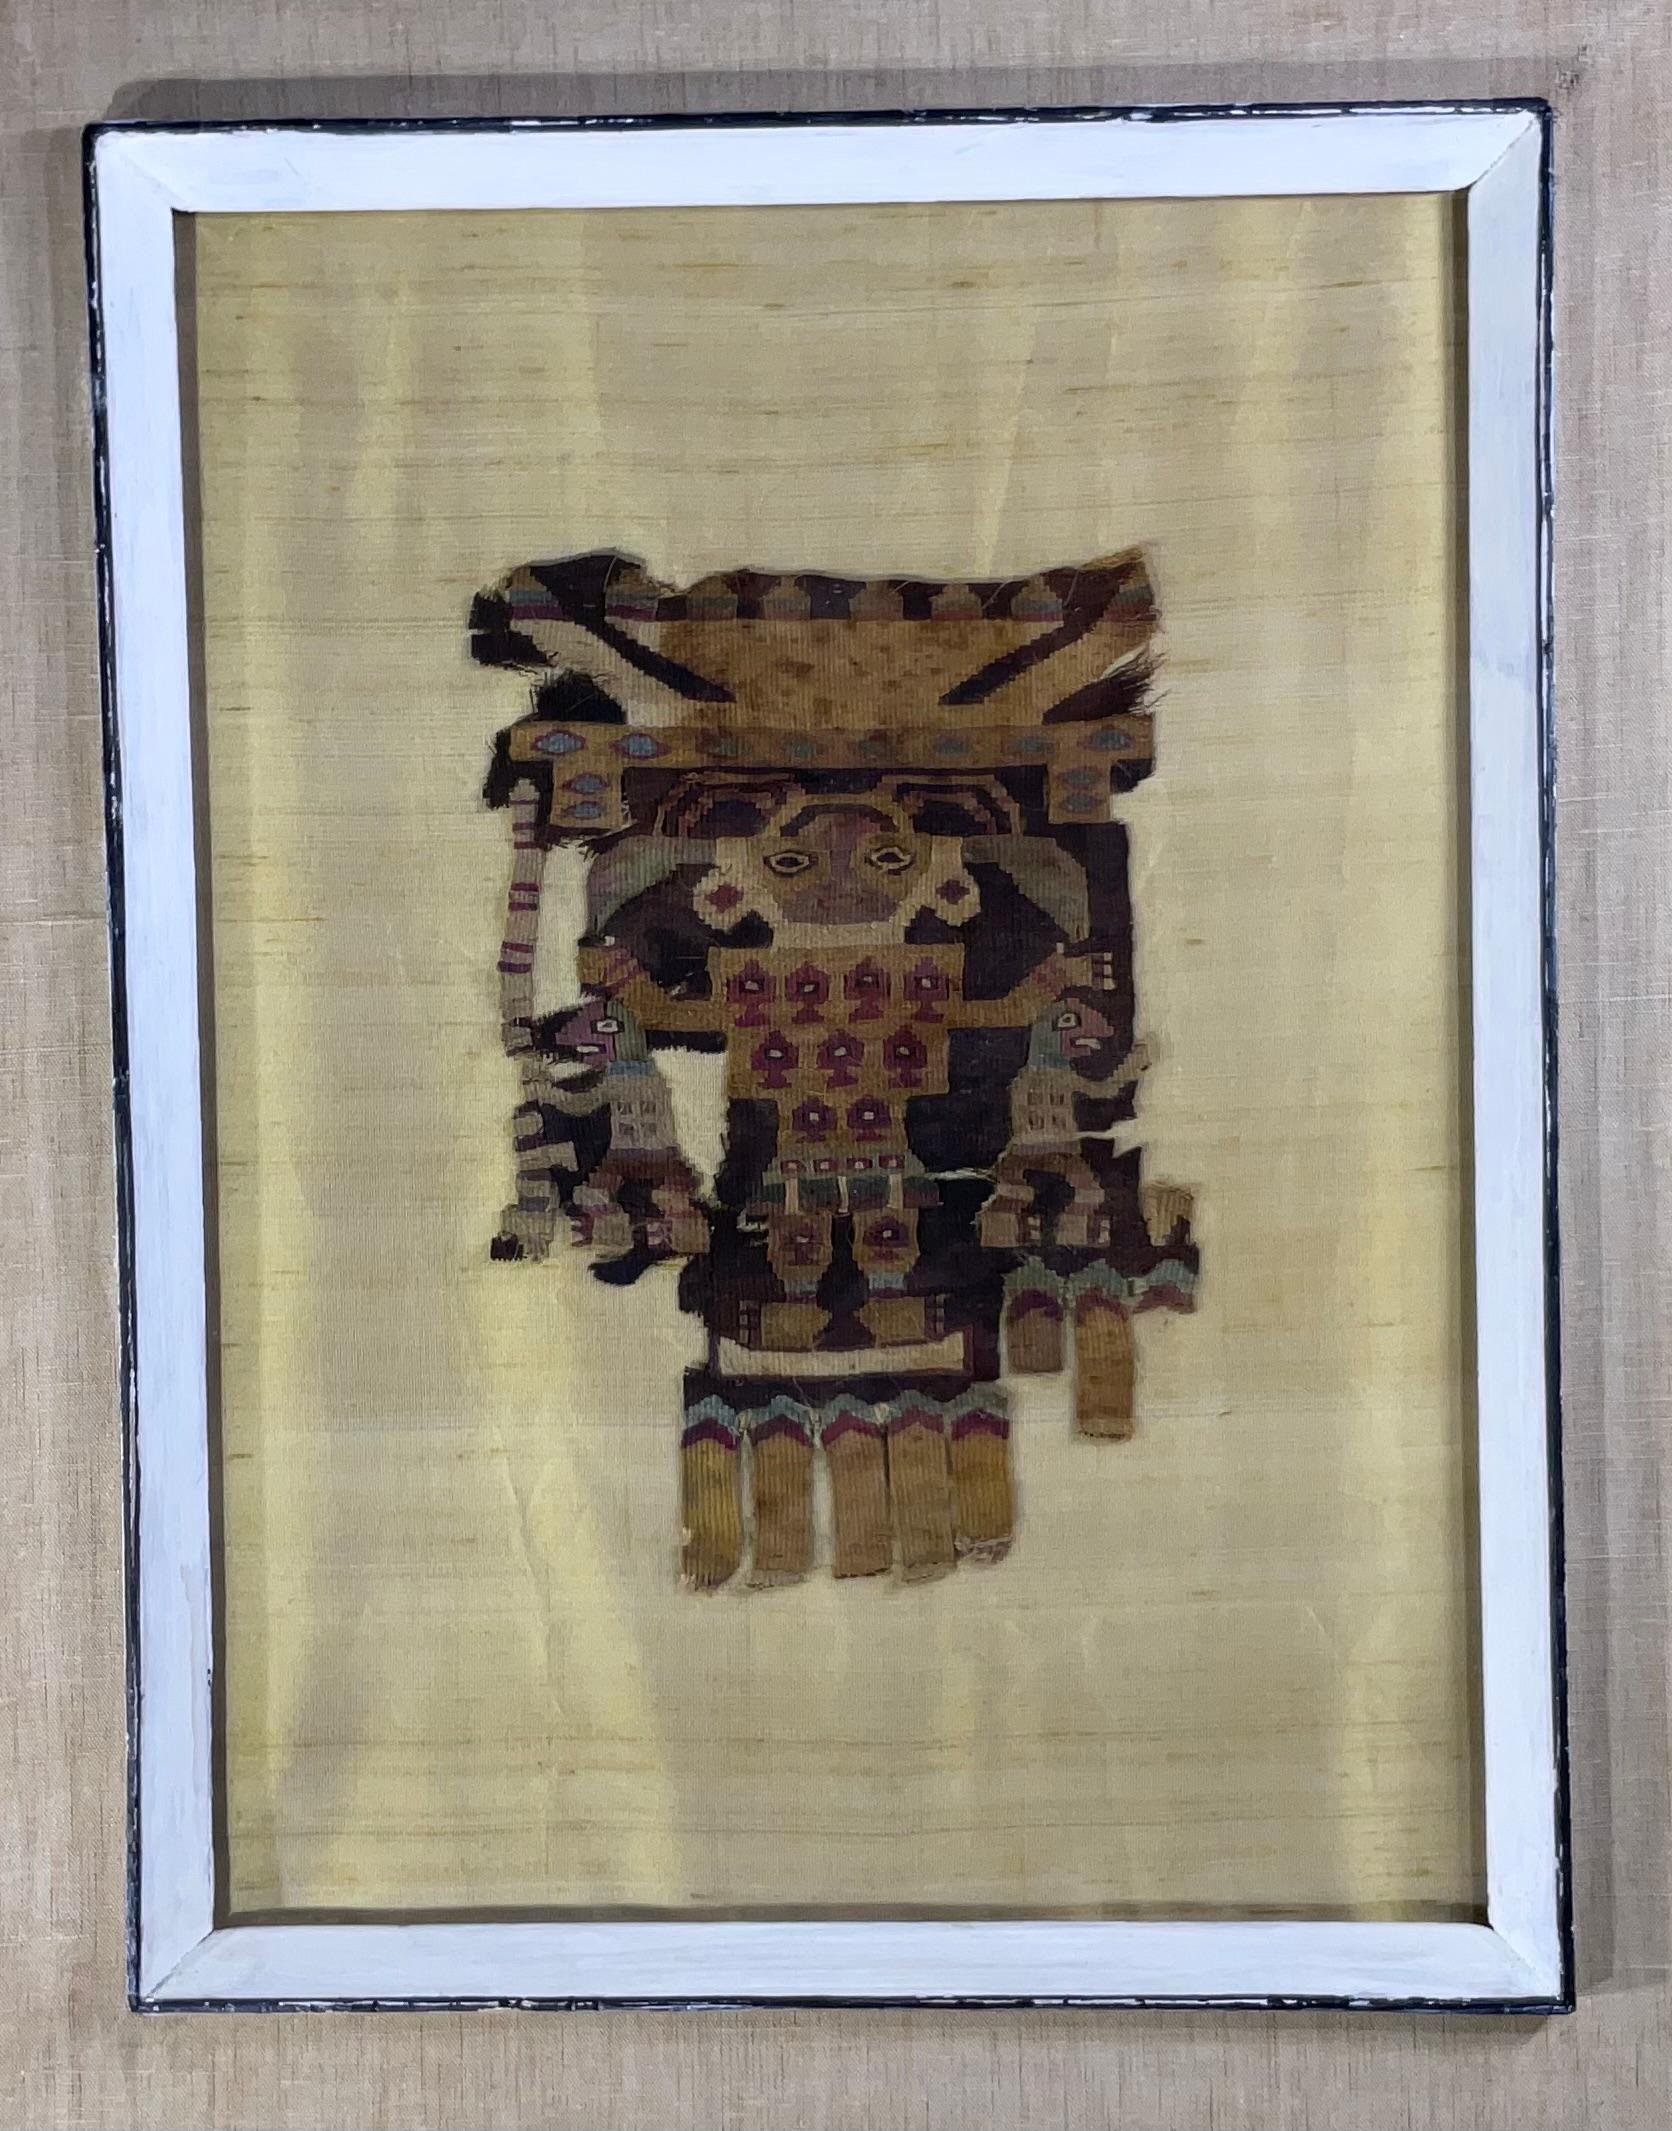 Fragment de textile tissé à la main de qualité muséale, présentant un motif humain, royal ou martien, monté professionnellement sur soie matte, dans un cadre en bois vintage très décoratif servant de boîte à ombres. Le textile est daté de la fin de